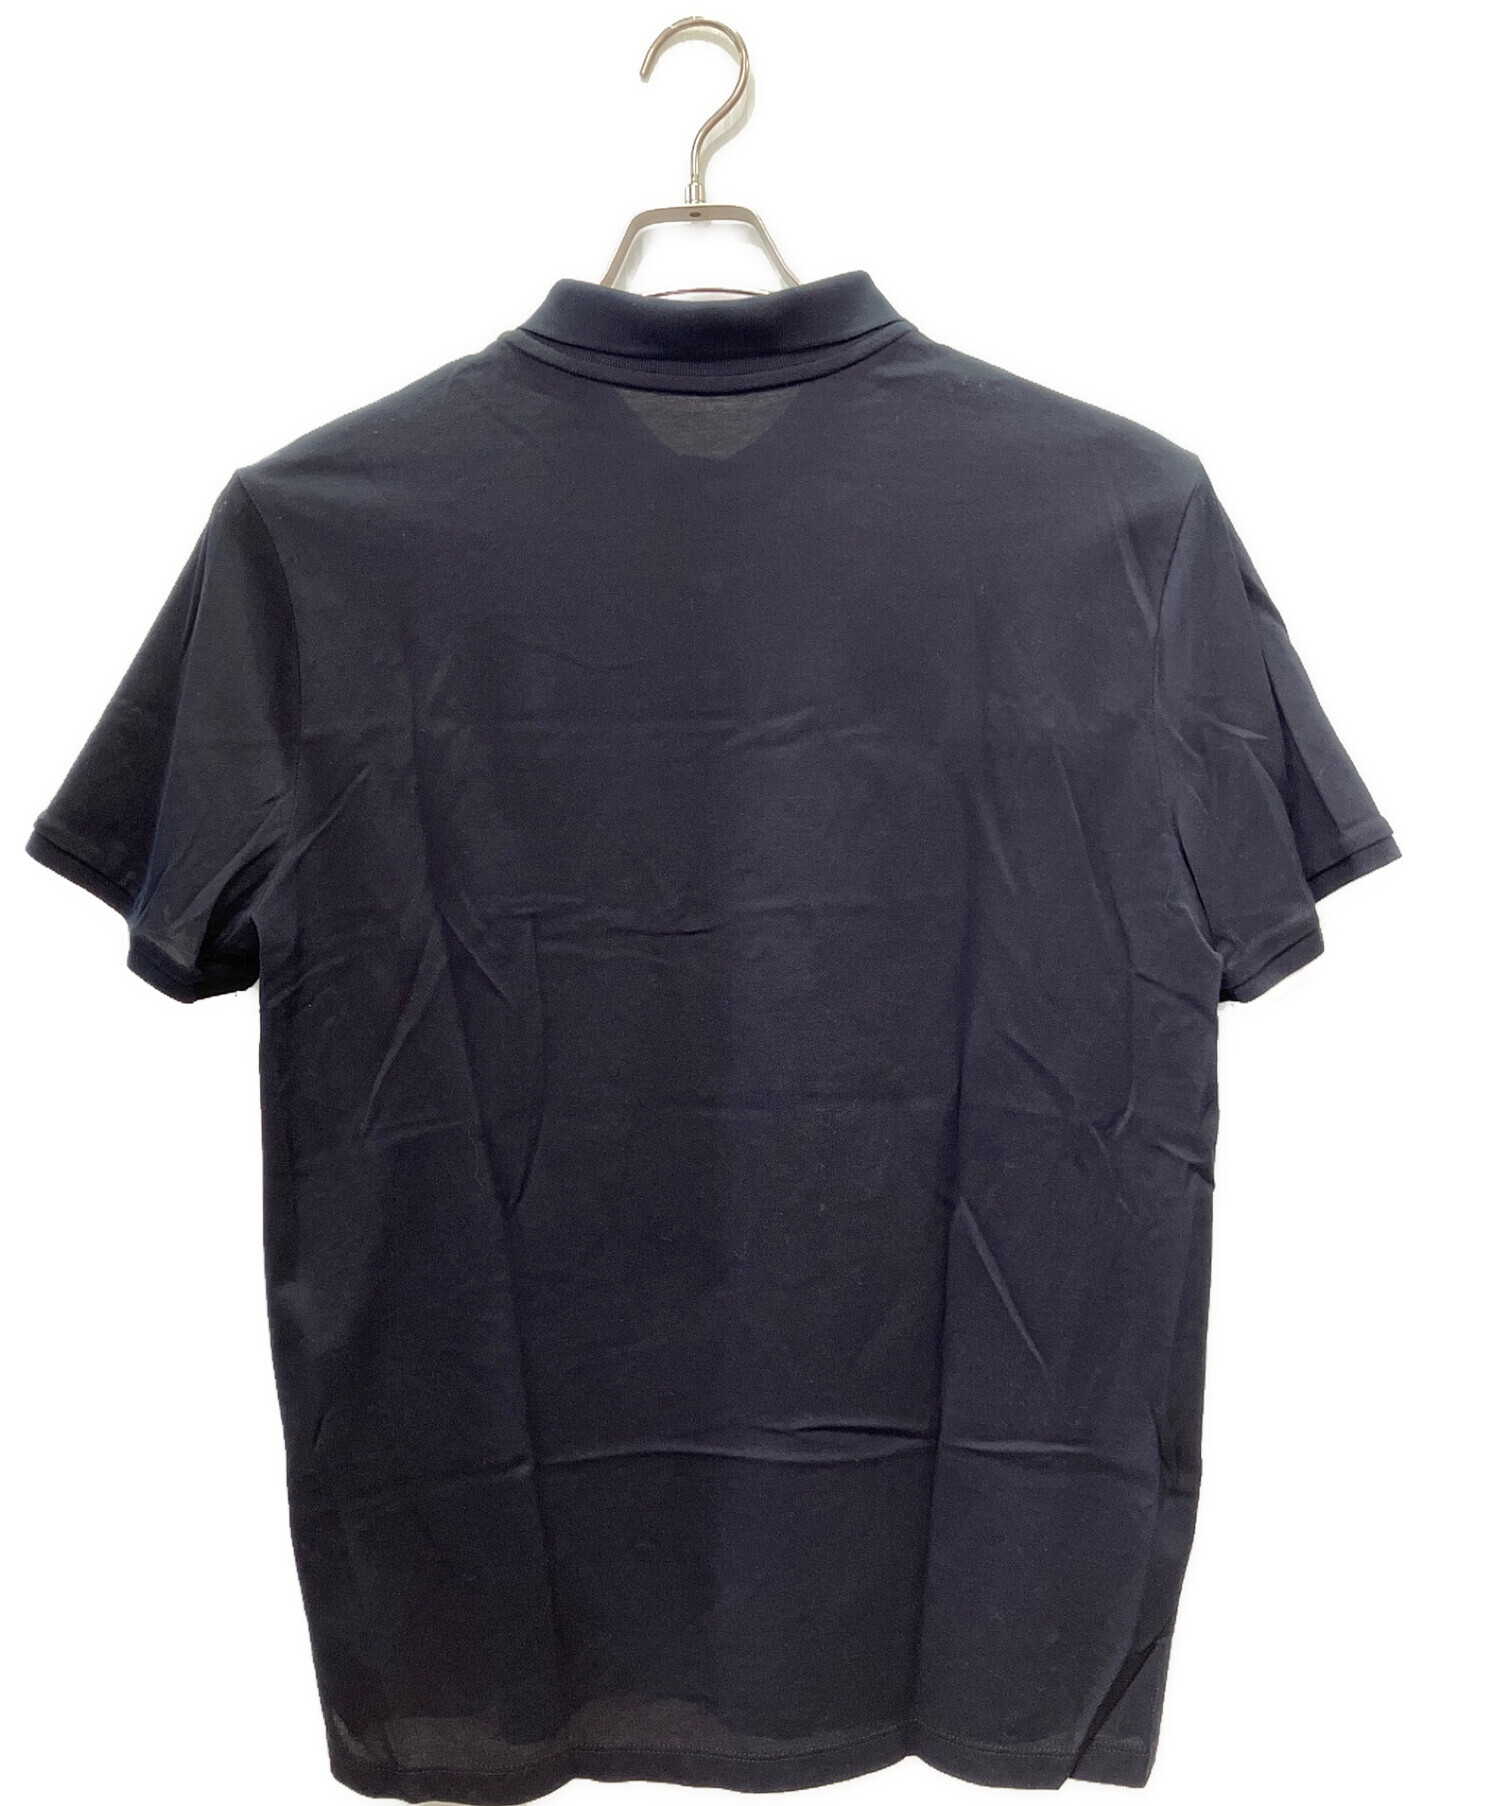 MONCLER (モンクレール) ラバーワッペンロゴポロシャツ ネイビー サイズ:L